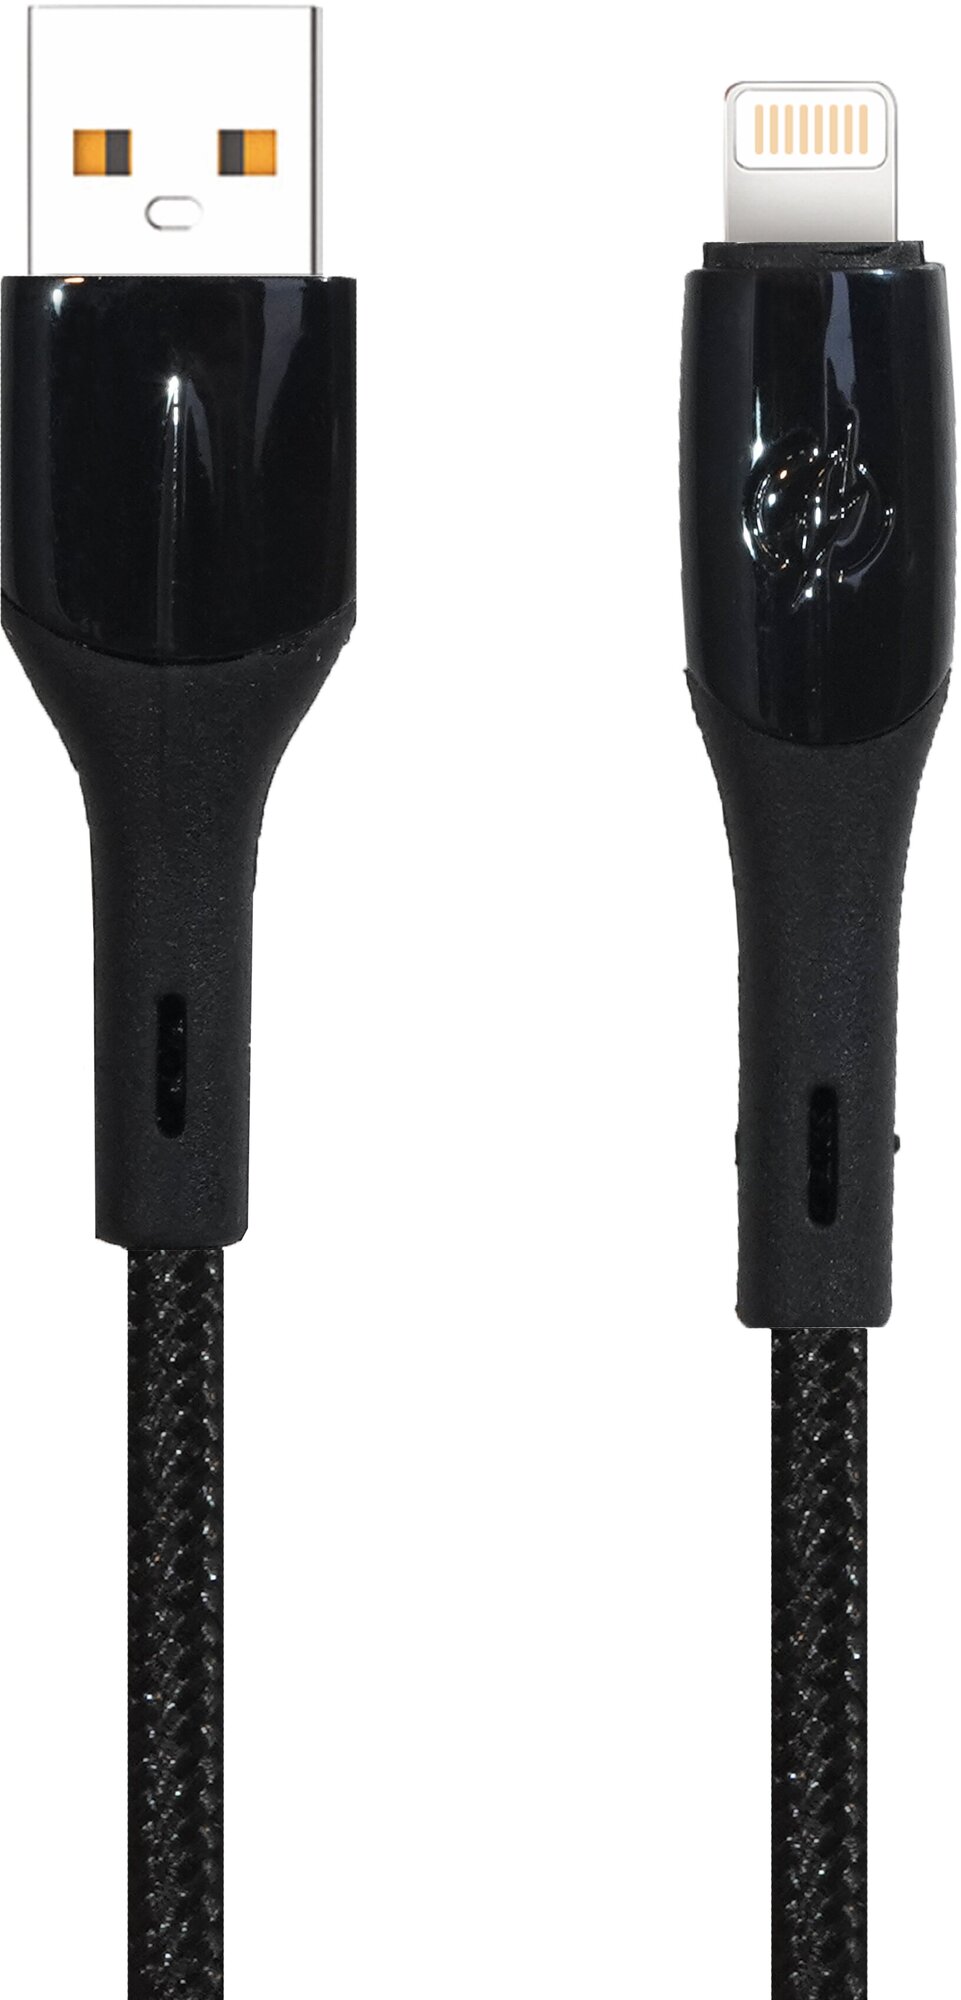 Кабель USB - 8 pin FaisON K-18 Static, 1.0м, 2.4A, цвет: чёрный в оплётке